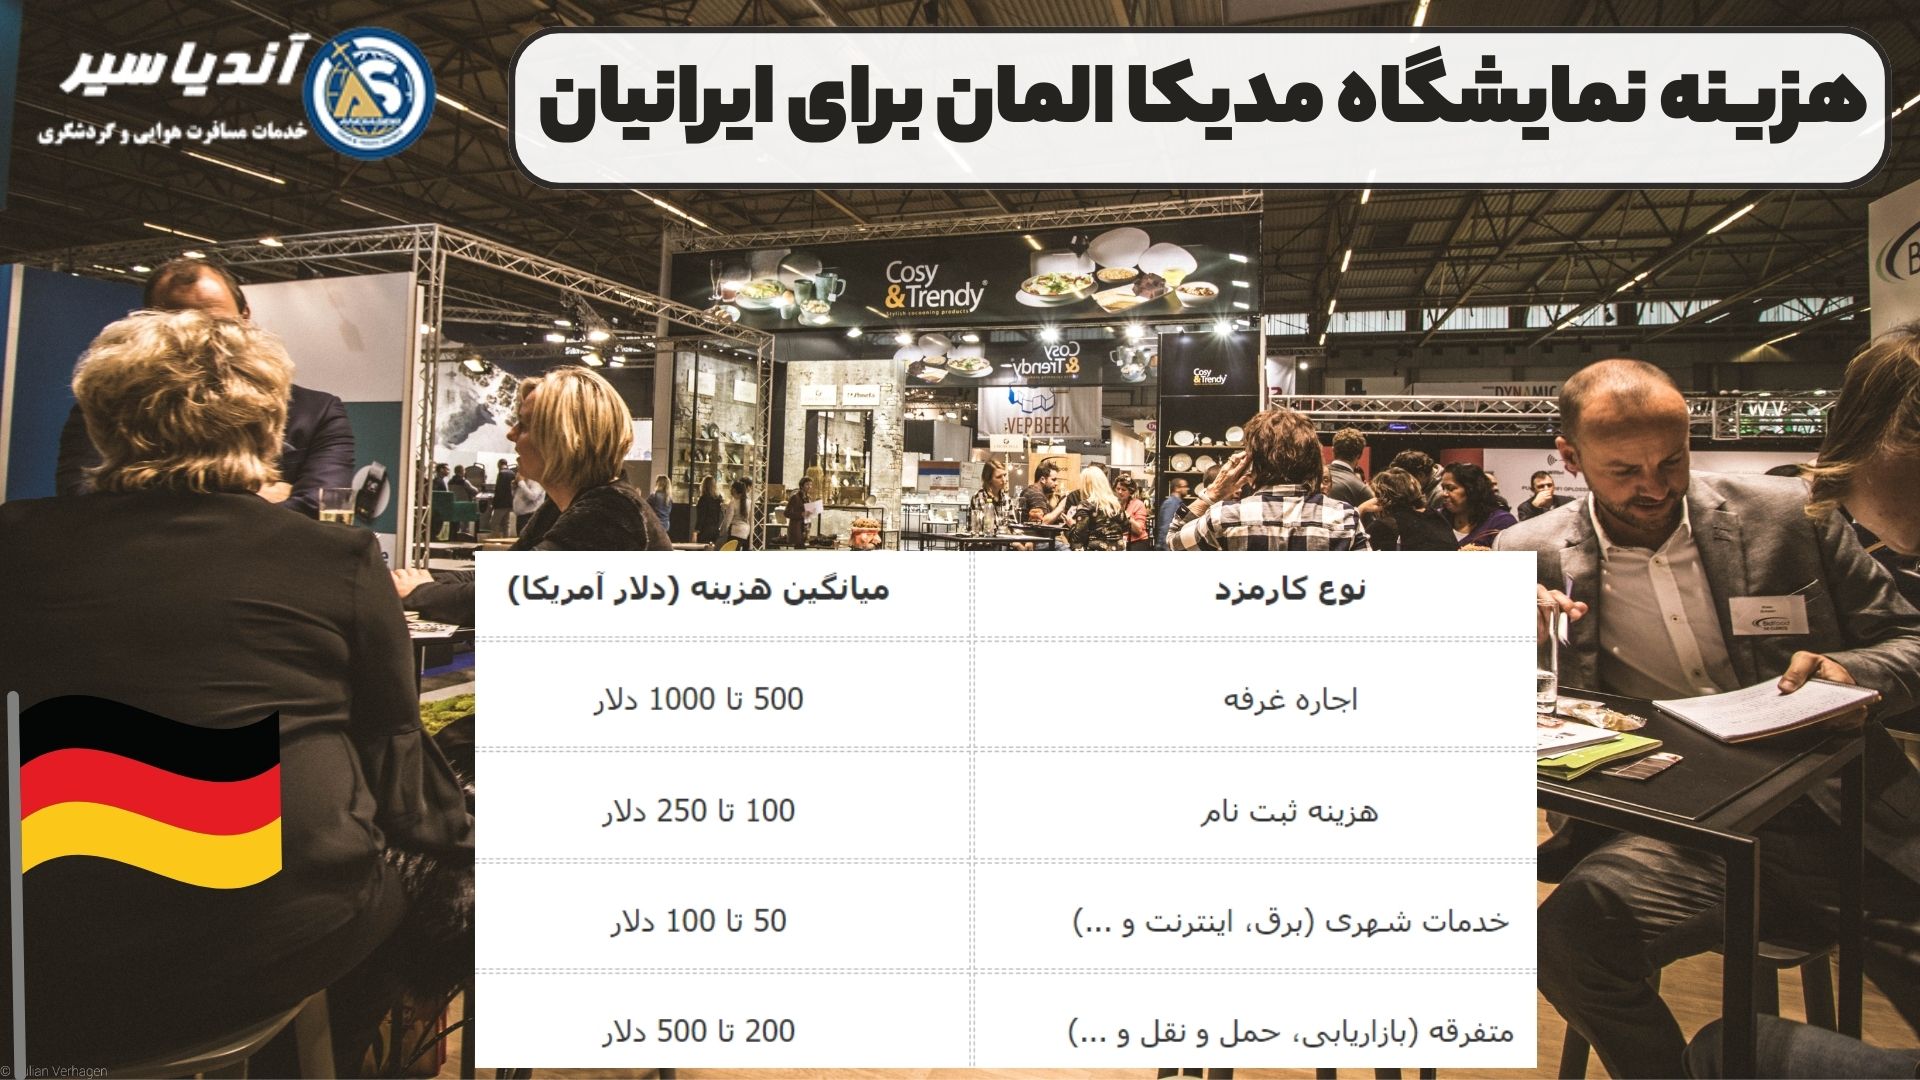 هزینه نمایشگاه مدیکا المان برای ایرانیان